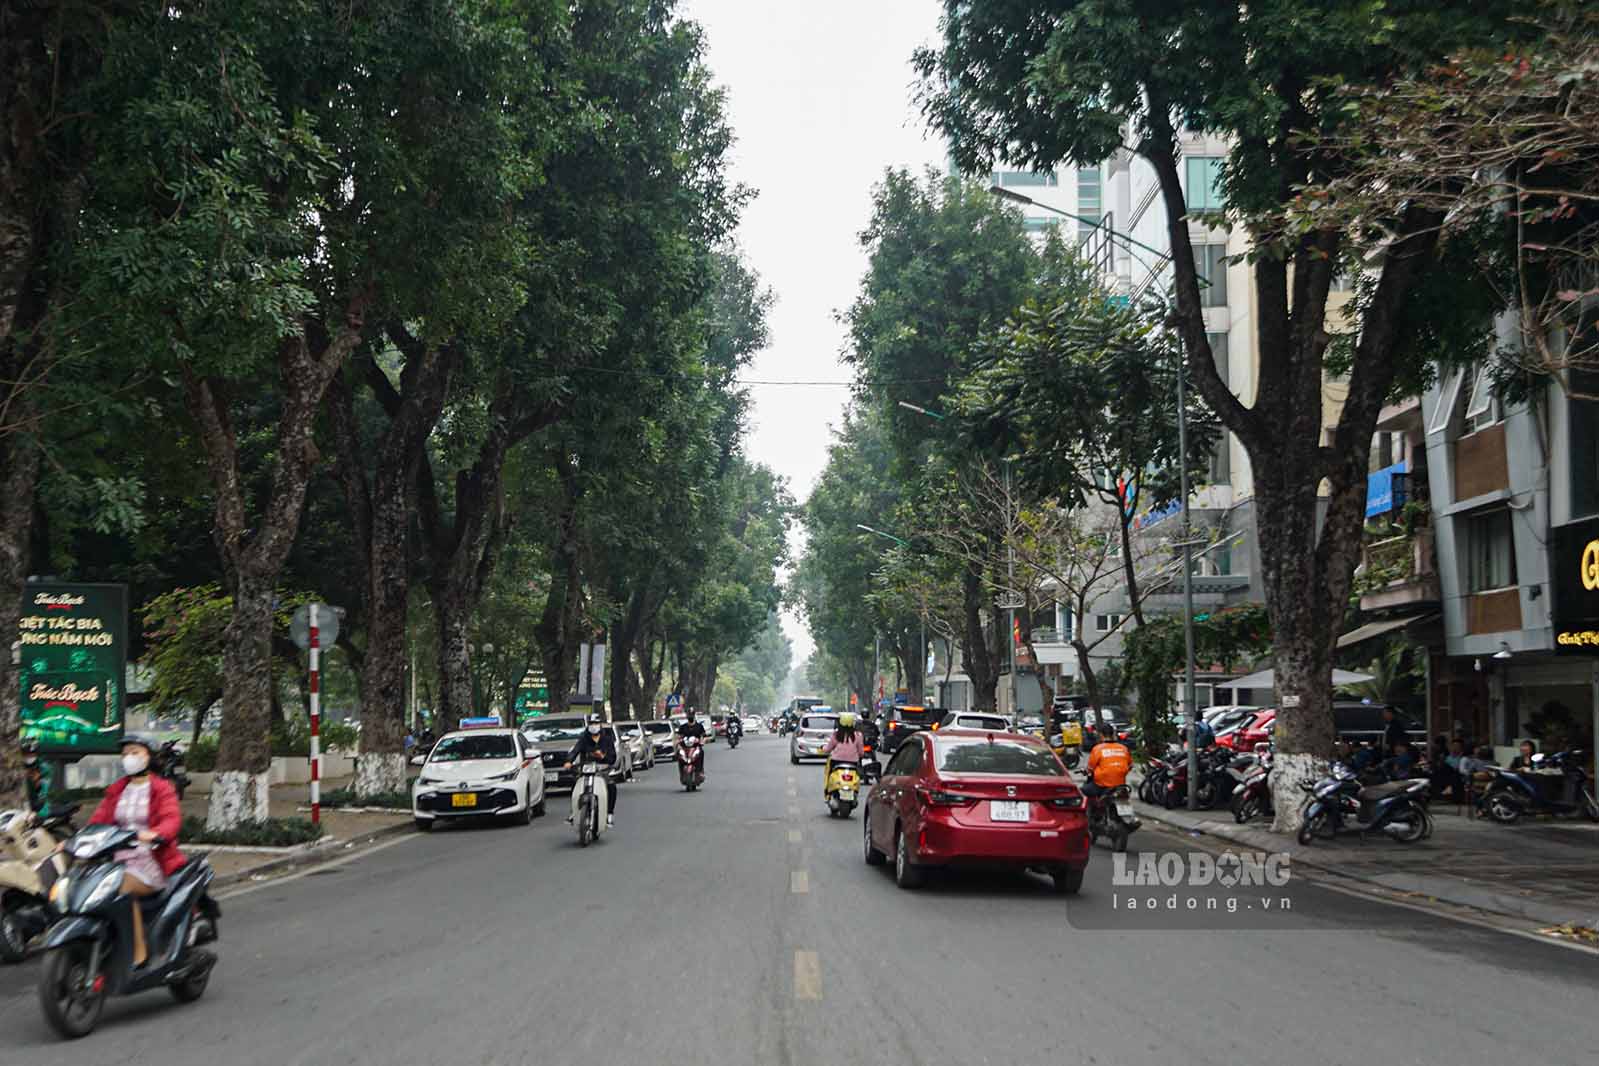 Quảng trường mùa Thu giáp ngã tư Nguyễn Du - Quang Trung sẽ tổ chức các hoạt động vui nhộn.